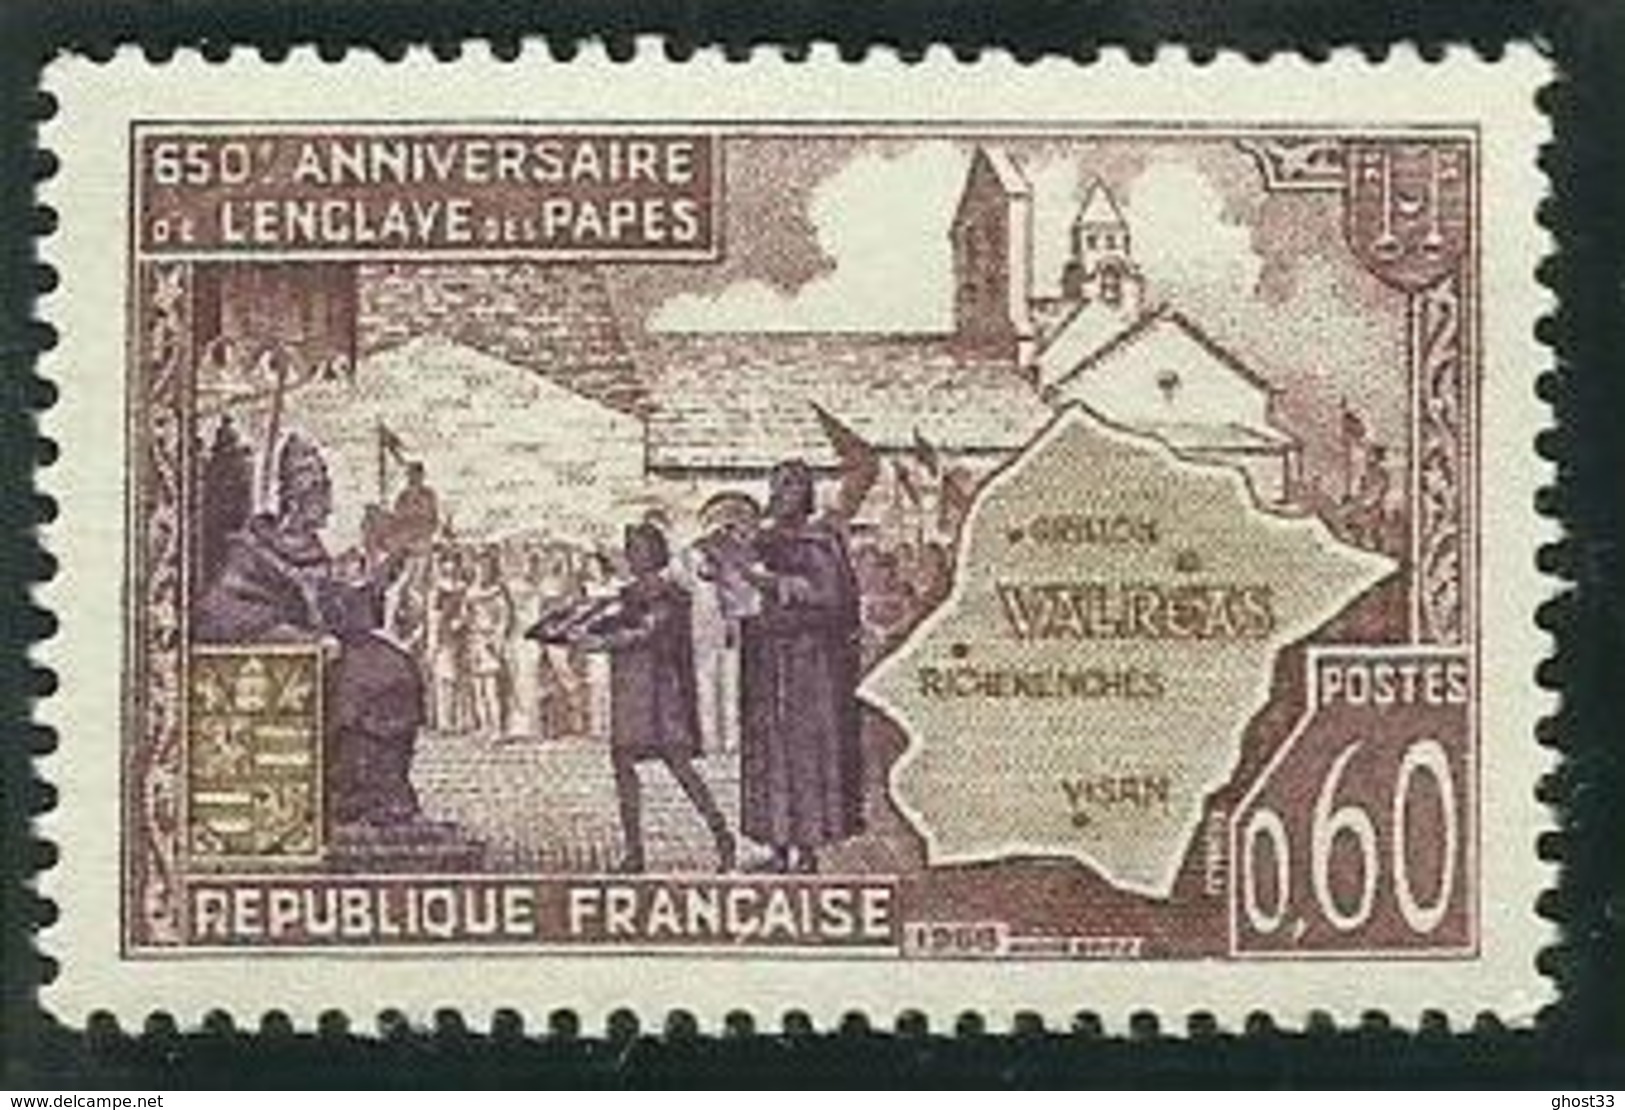 FRANCE - 1968 - 650ème ANNIVERSAIRE DE L'ENCLAVE PAPALE DE VALRÉAS - YT N° 1562 - TIMBRE NEUF** - Nuovi